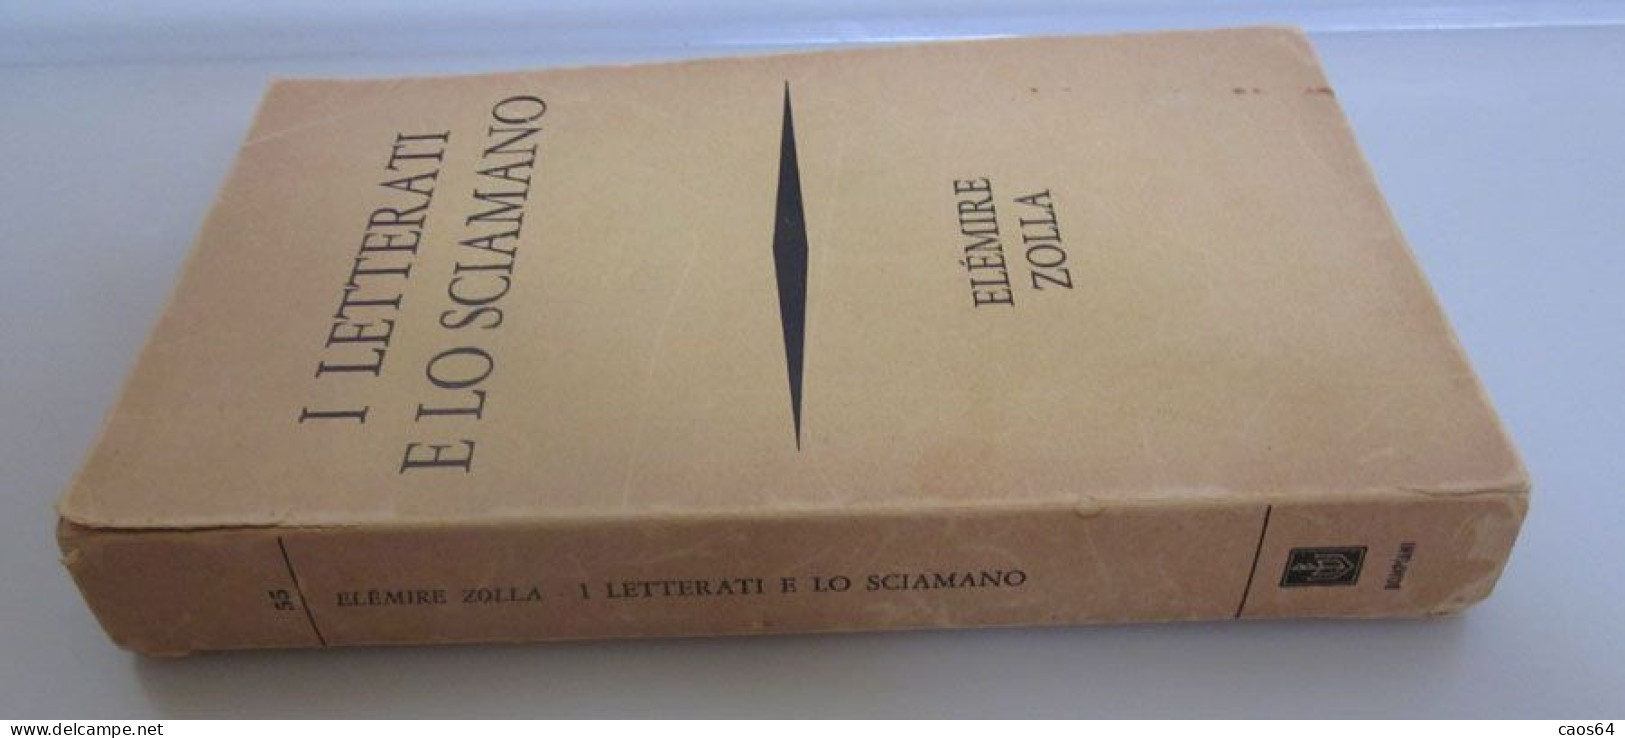 I Letterati E Lo Sciamano Elémire Zolla Bompiani 1969 - Religione